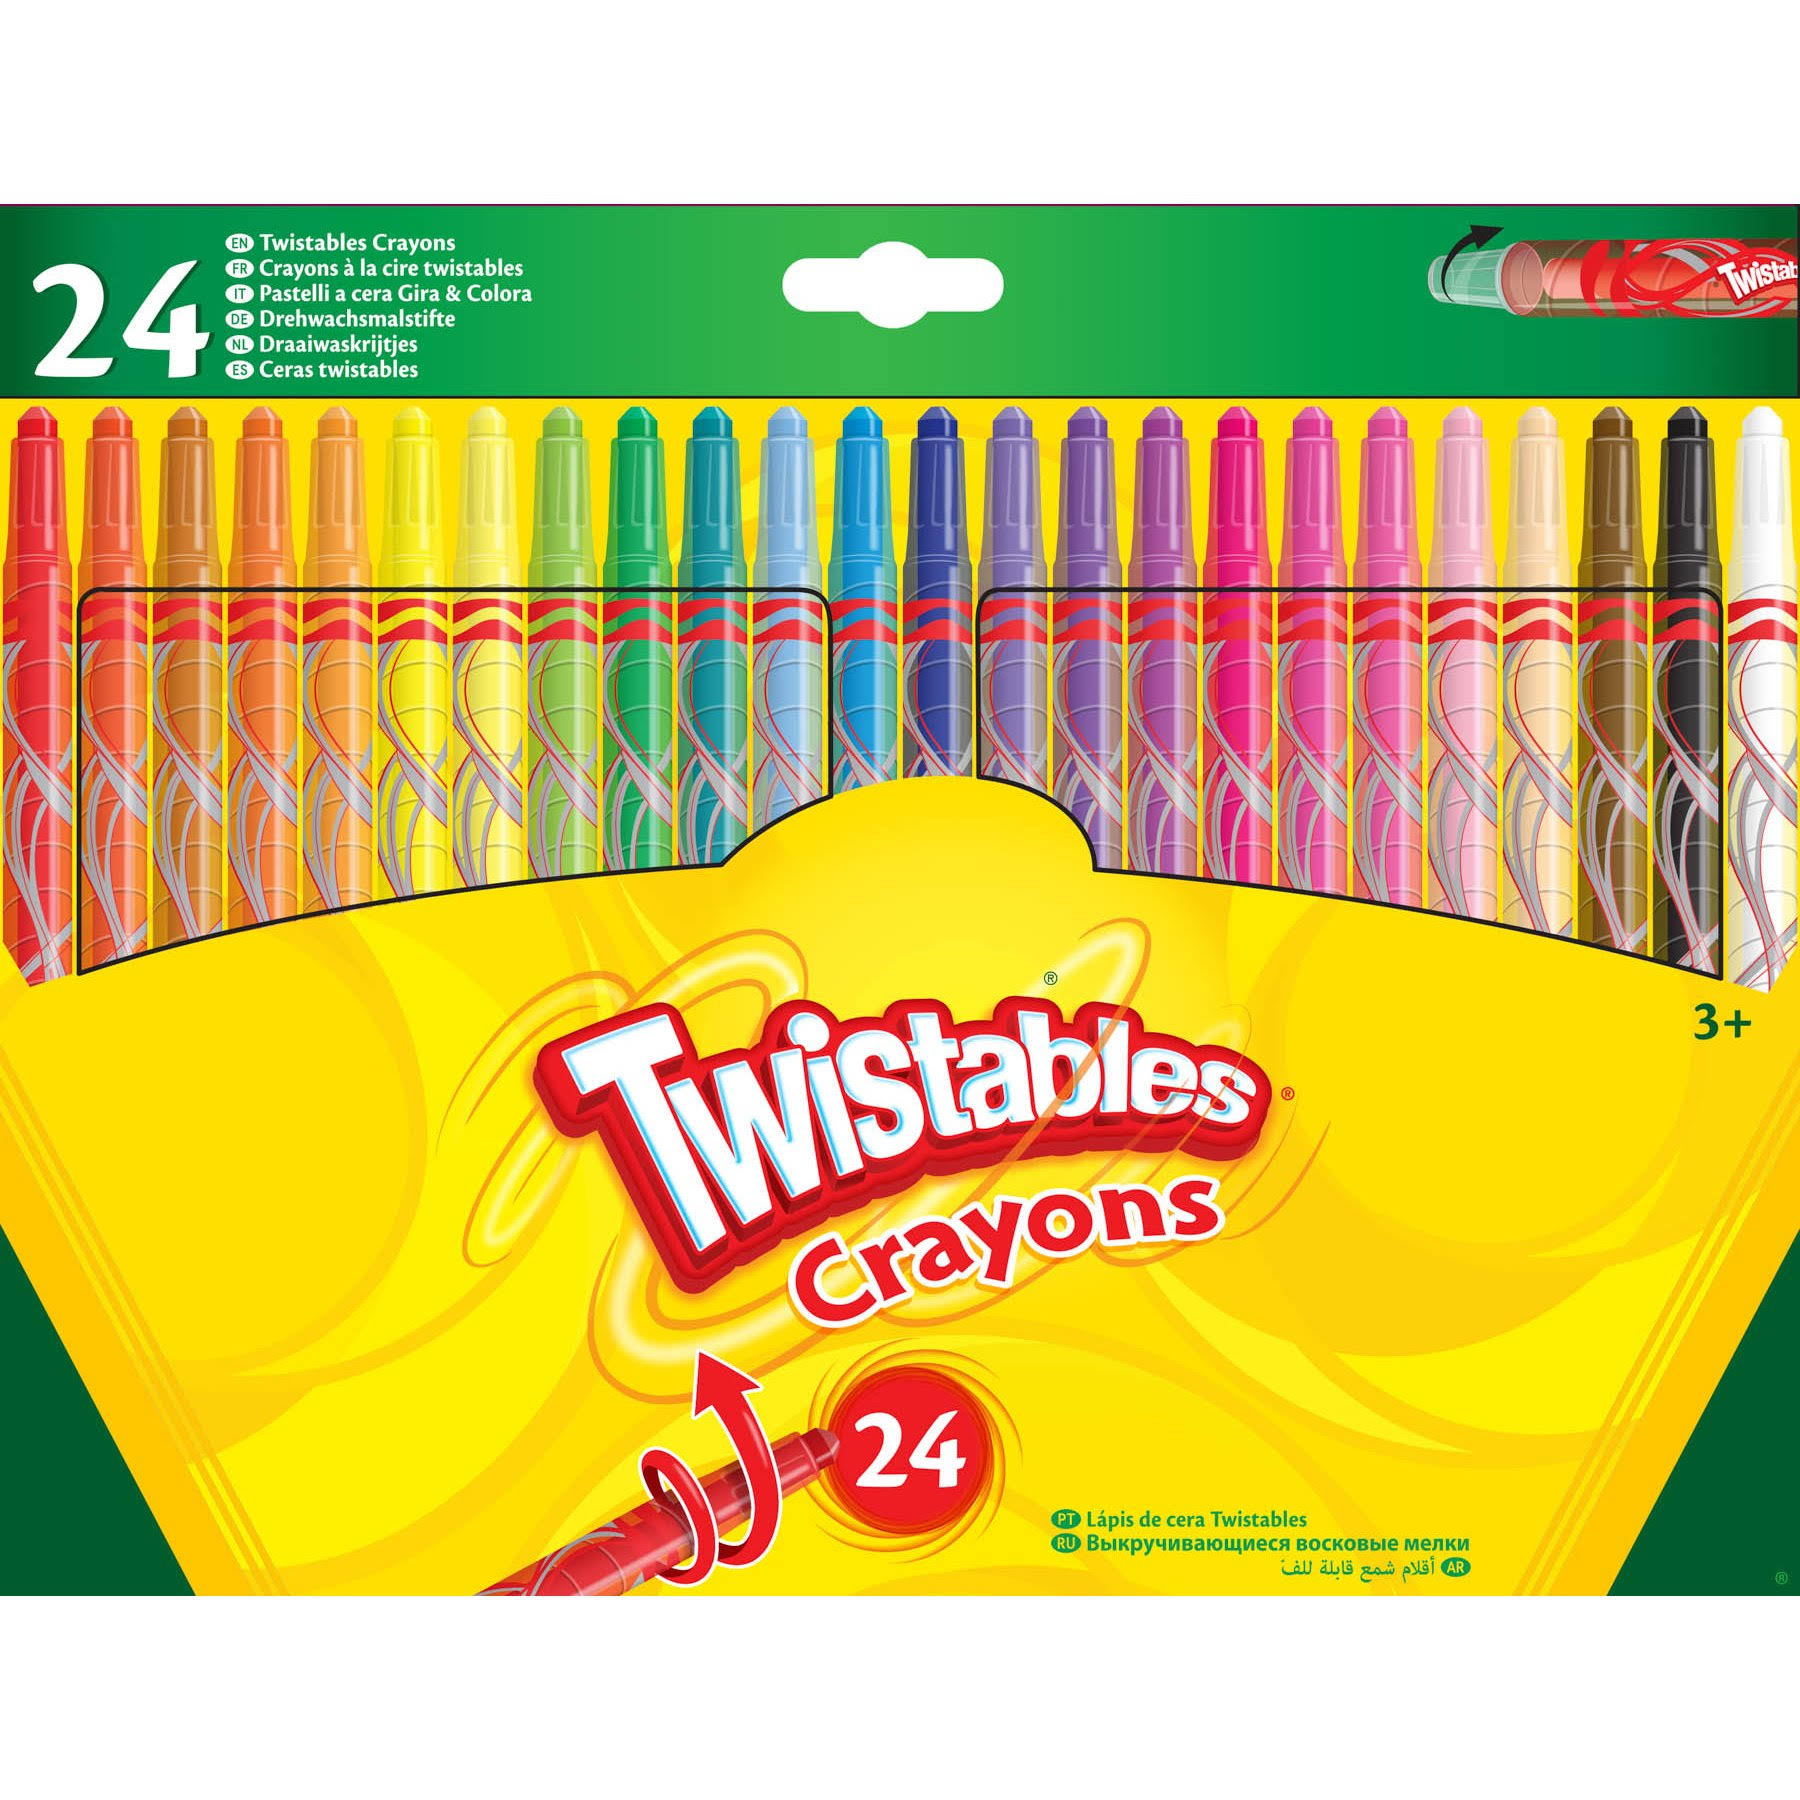 Crayola: 24 Twistable Crayons